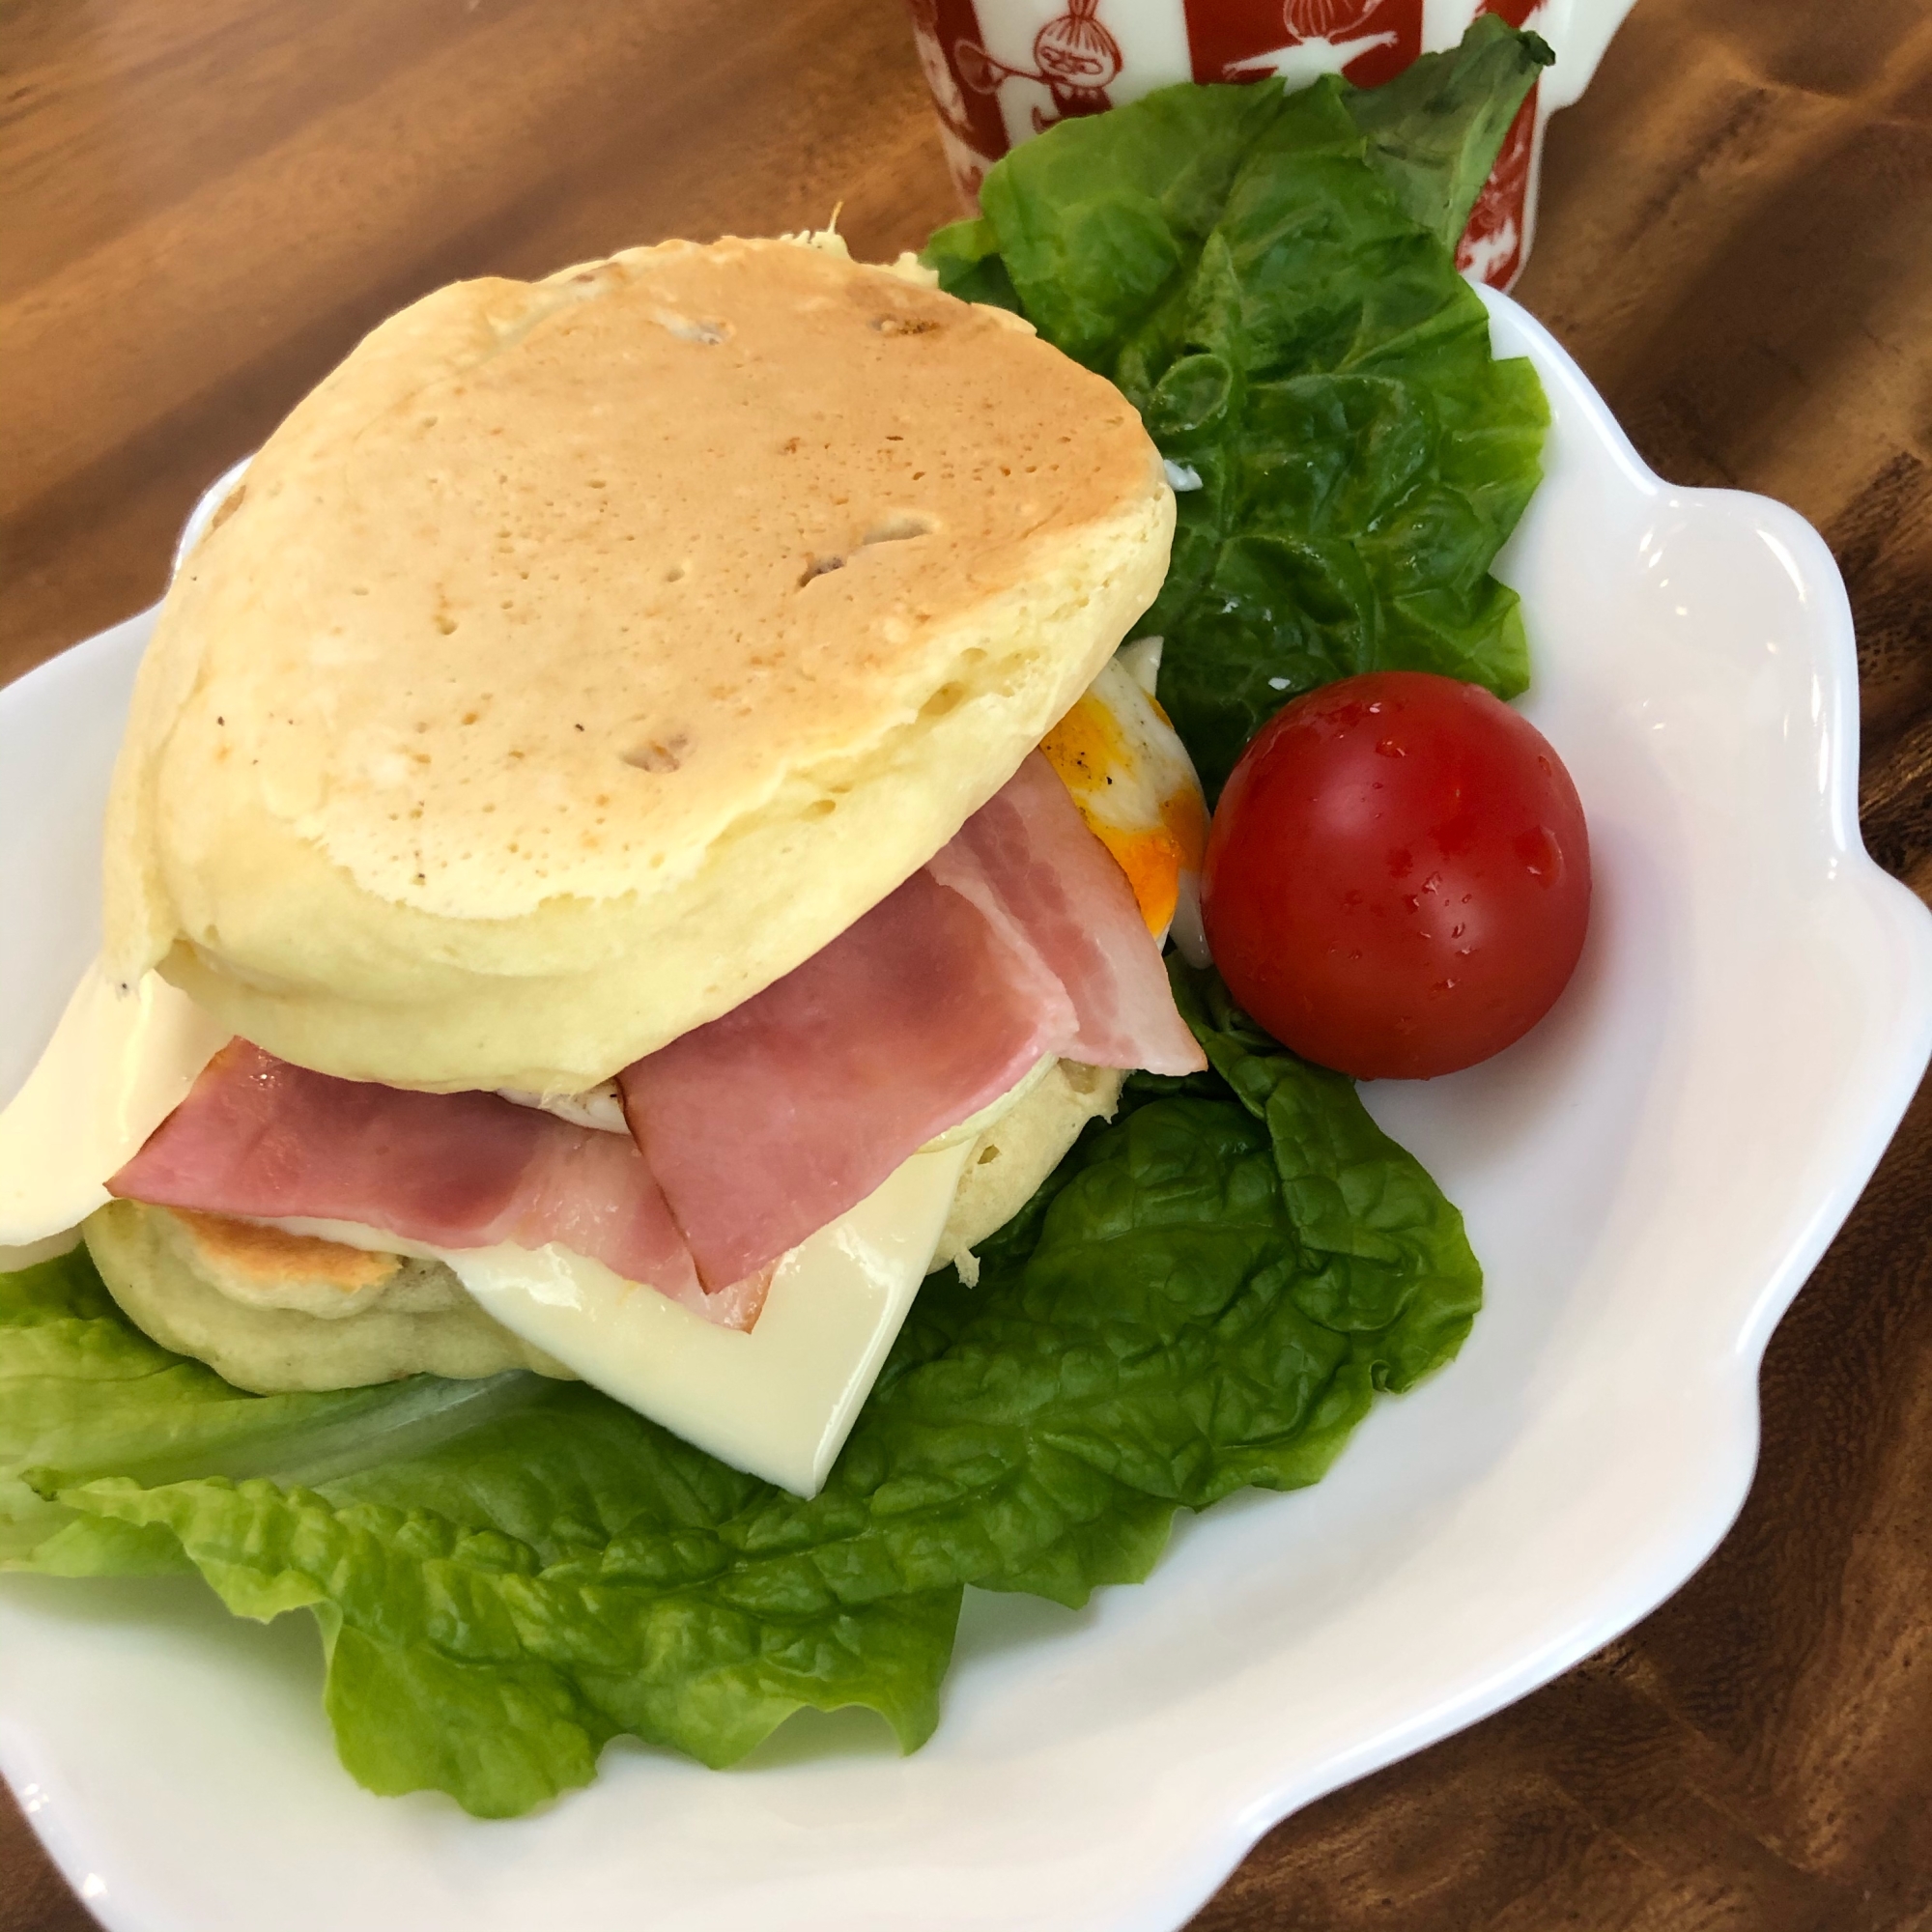 朝マック風マックグリドル　ベーコン&エッグ&チーズ